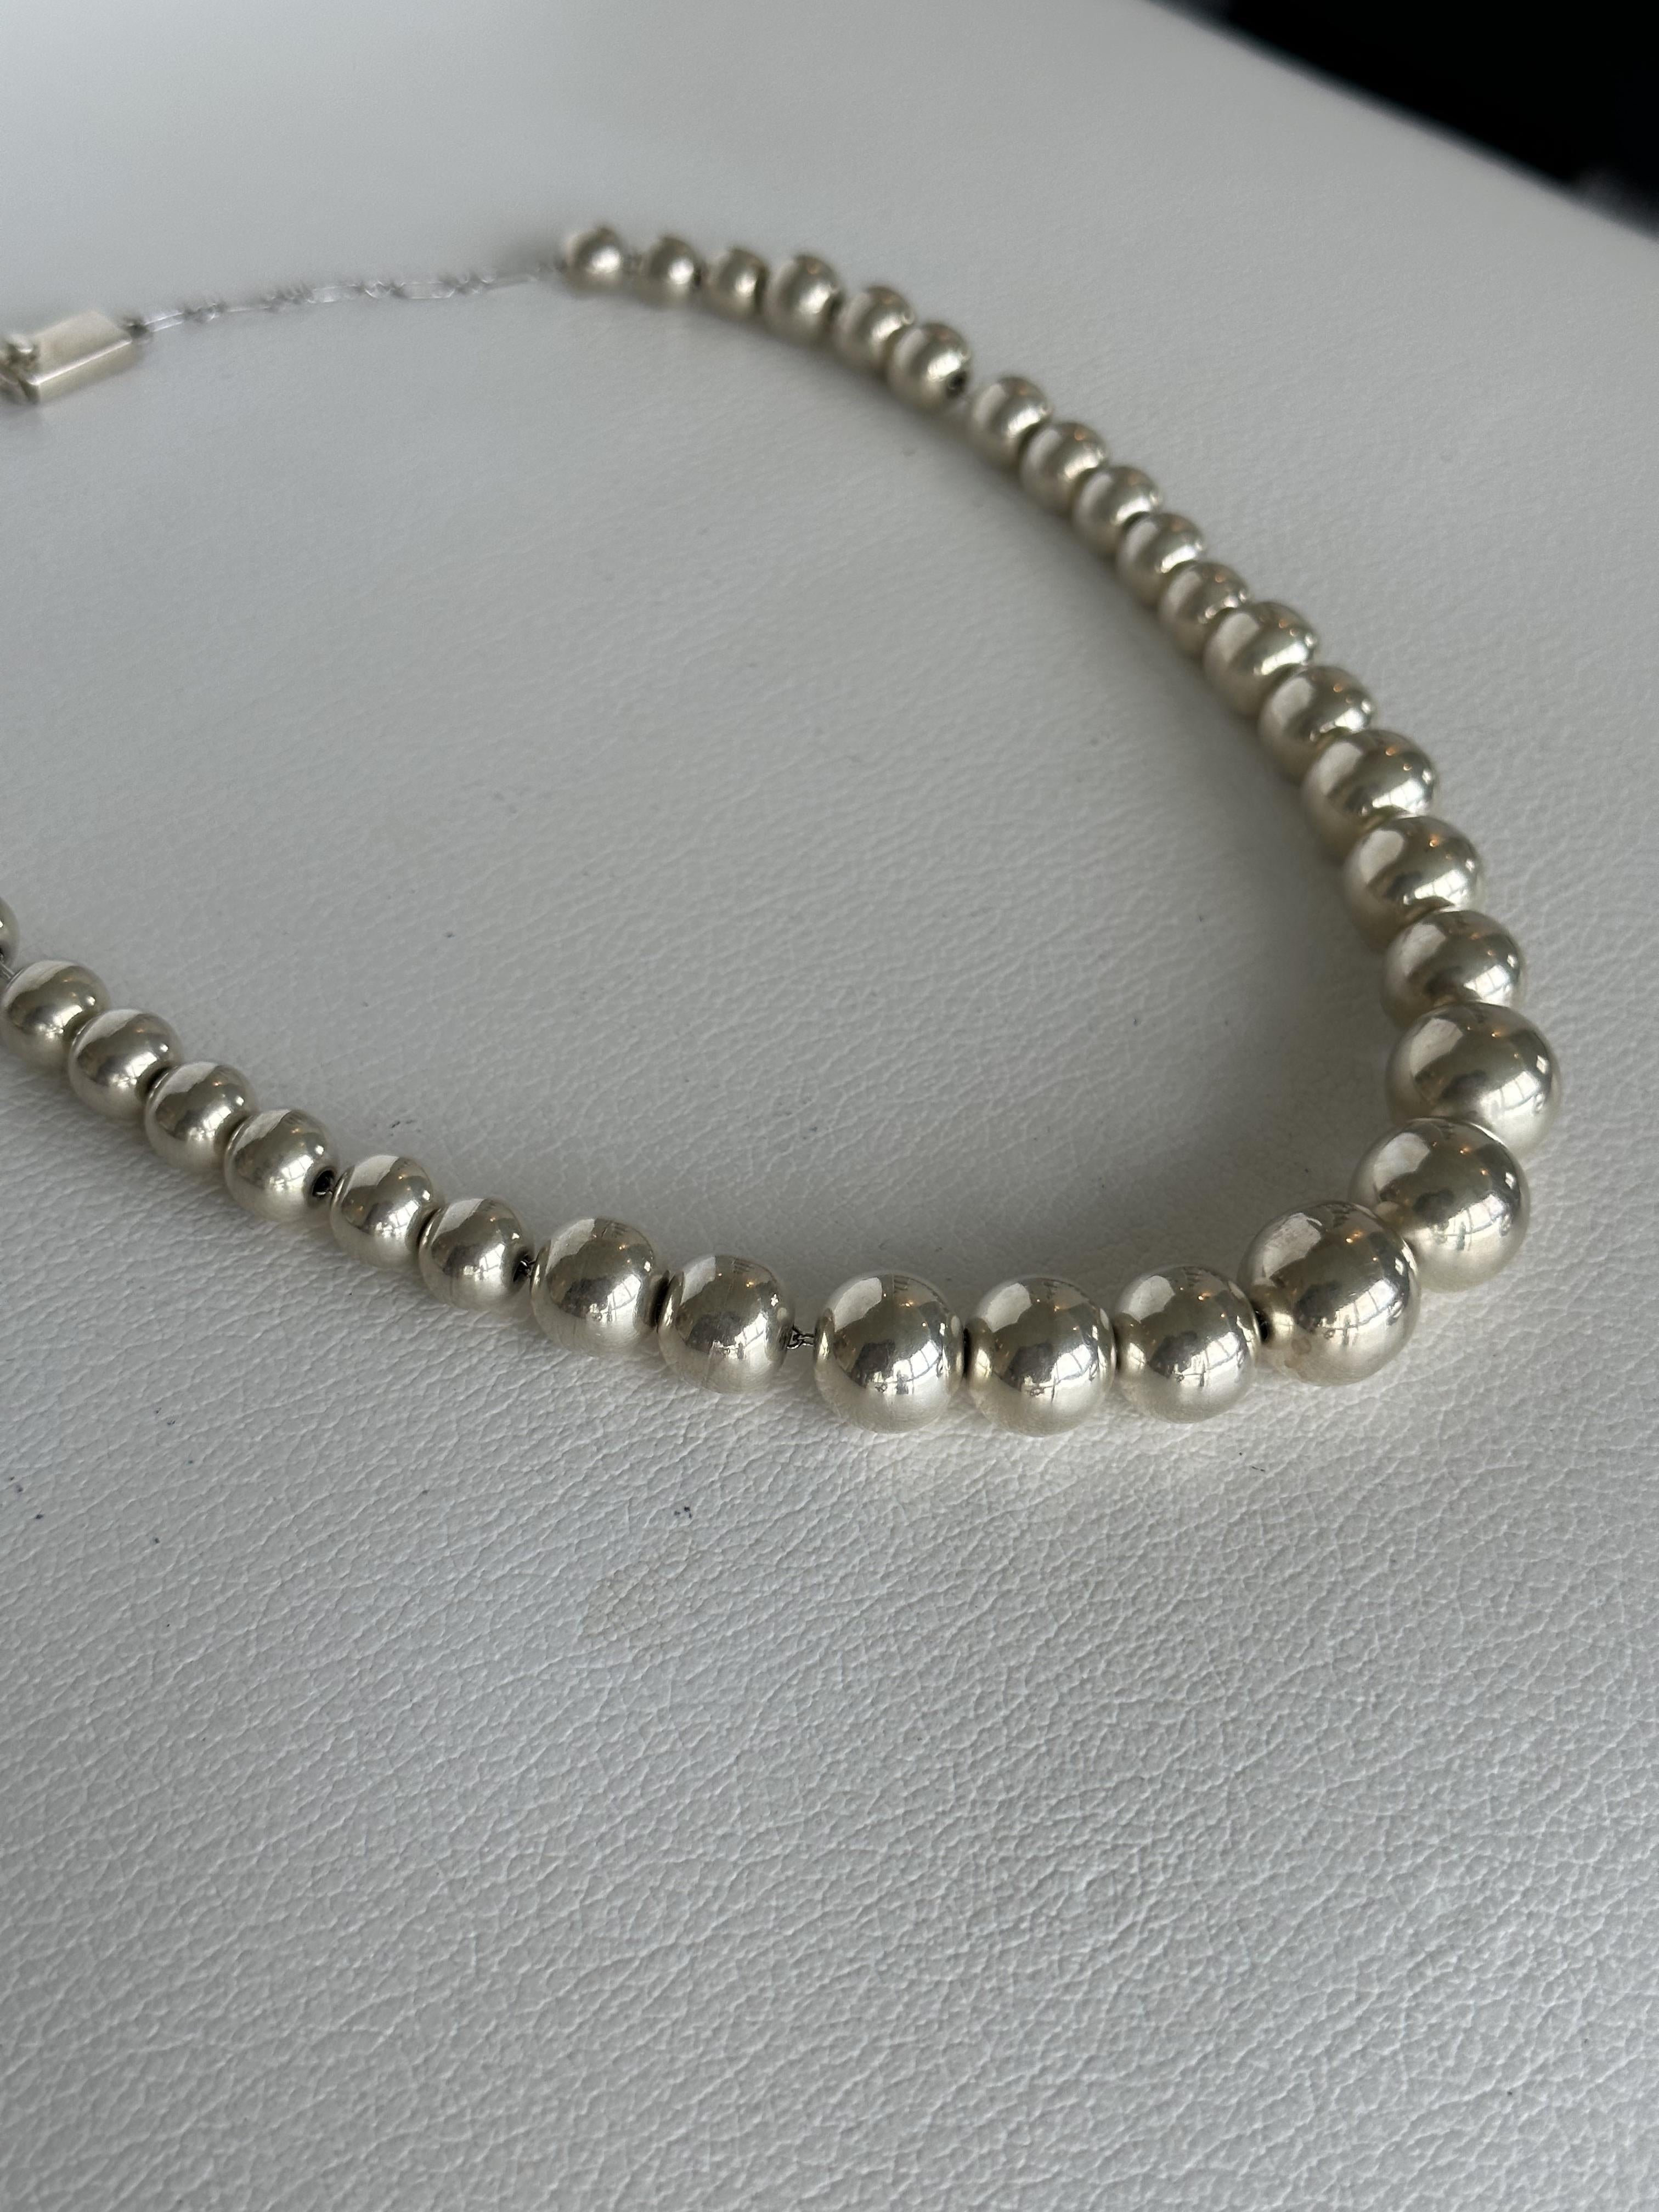 Collier de perles graduées en argent sterling.
Longueur du collier : 48 cm.
Nombre de perles en argent : 36.
Dimension Maximum : 14,03 de long x 14,95 de large.
Dimensions minimales : 6,41 de long x 7,06 de large.
Poids total : 66,40 grammes.